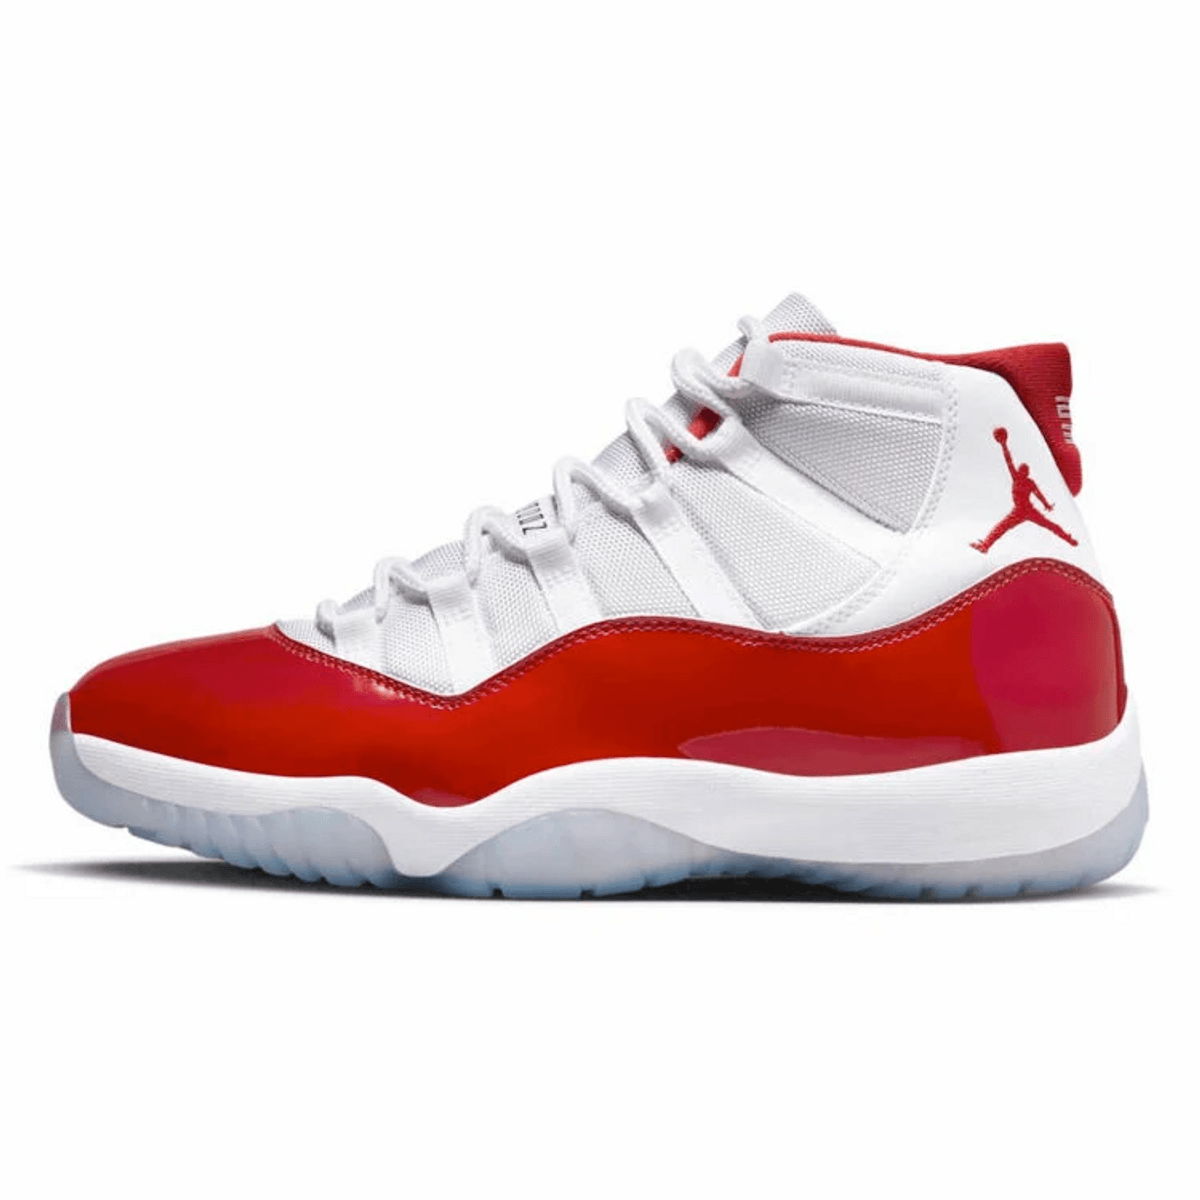 Jordan 11 Retro Cherry (2022)